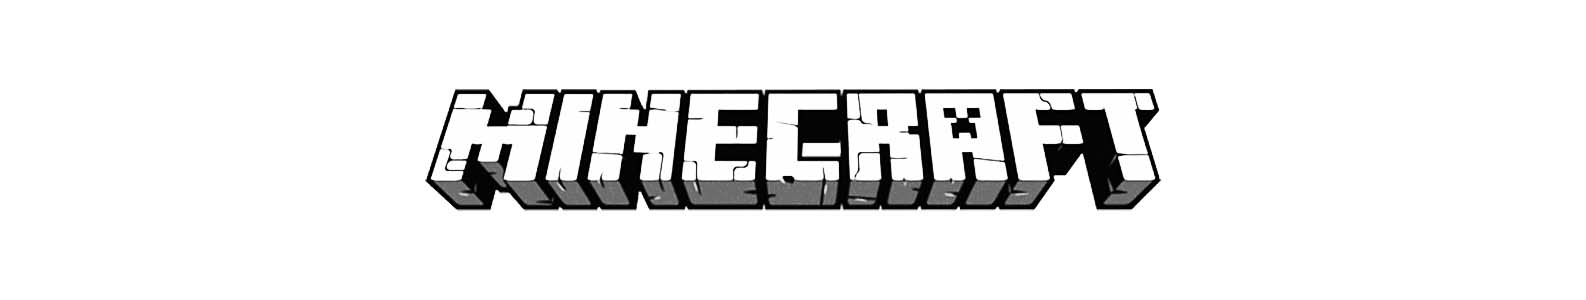 Minecraft brand header image